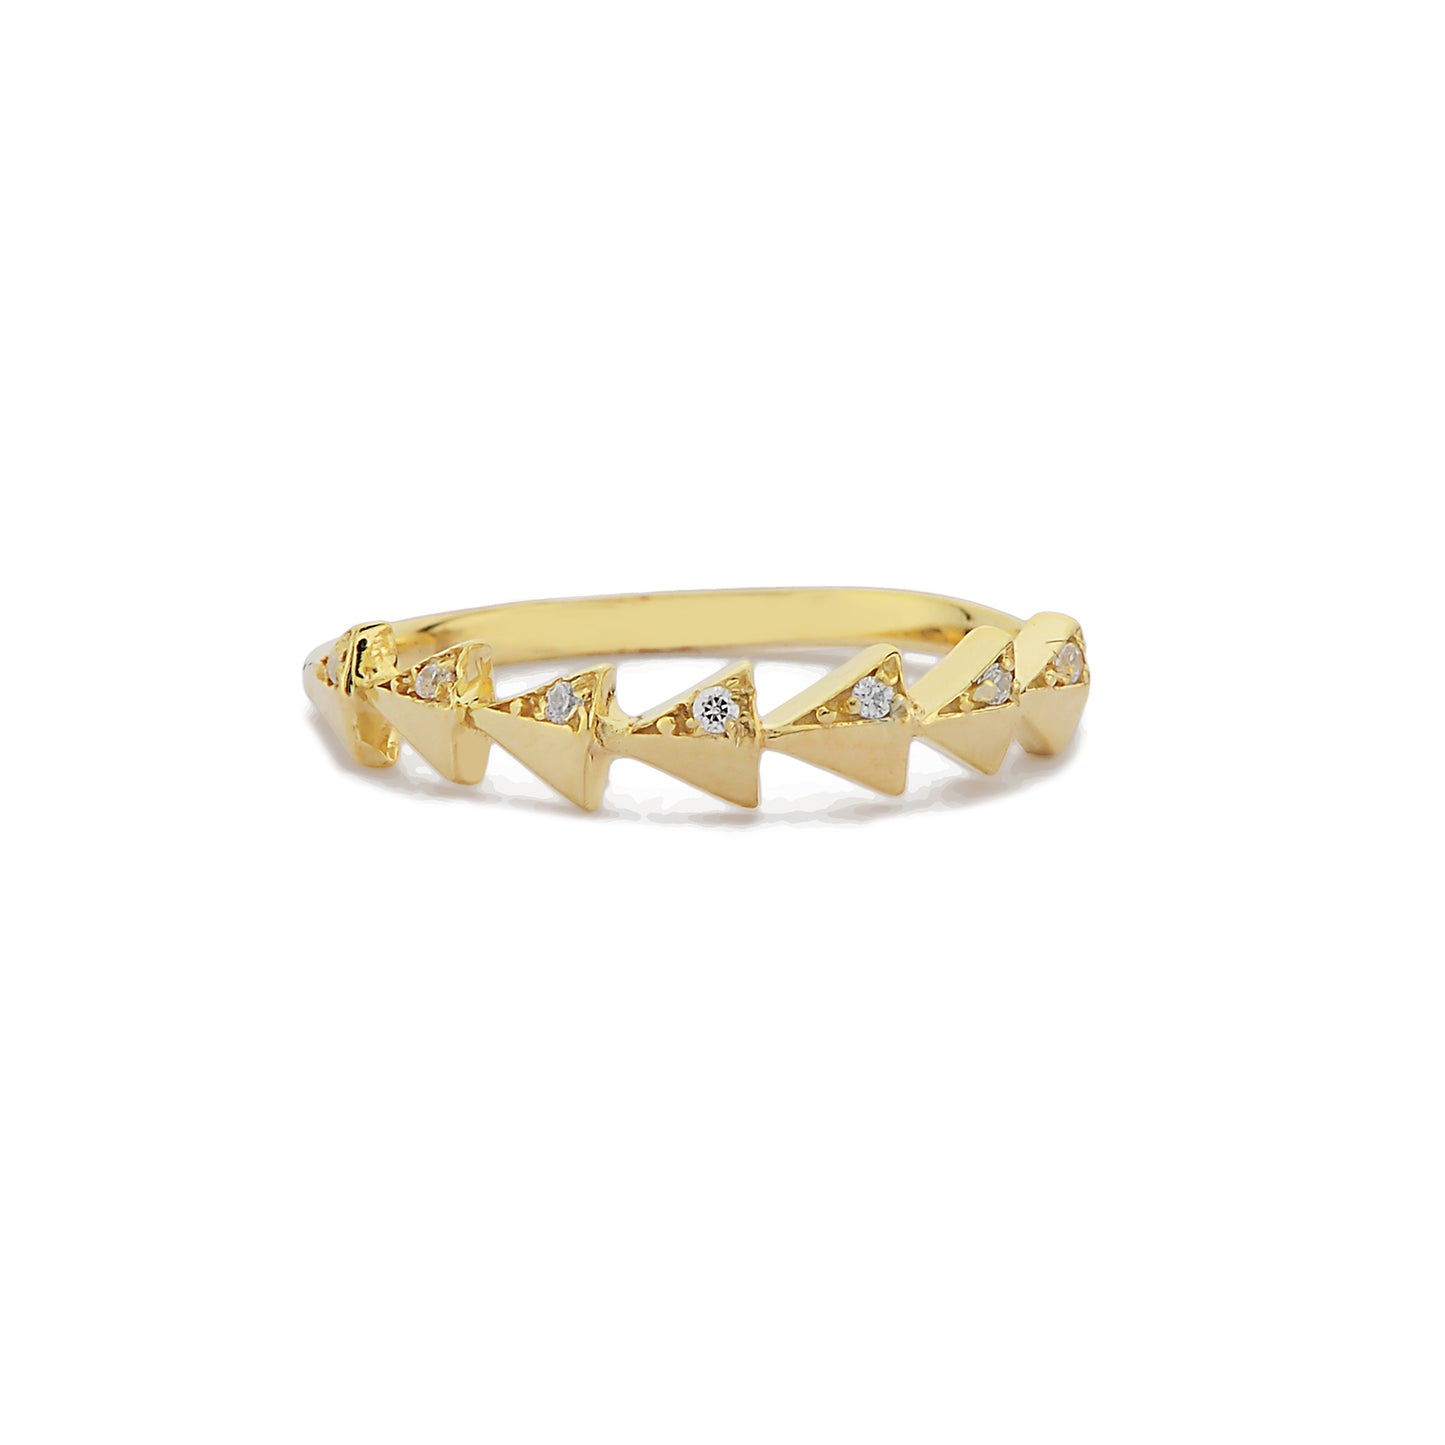 Driehoek Vormige Halve Eeuwigheid Ring, Driehoek Cluster Witte Diamanten Ring, Handgemaakte 14k Gouden Gebogen Golvende Ring